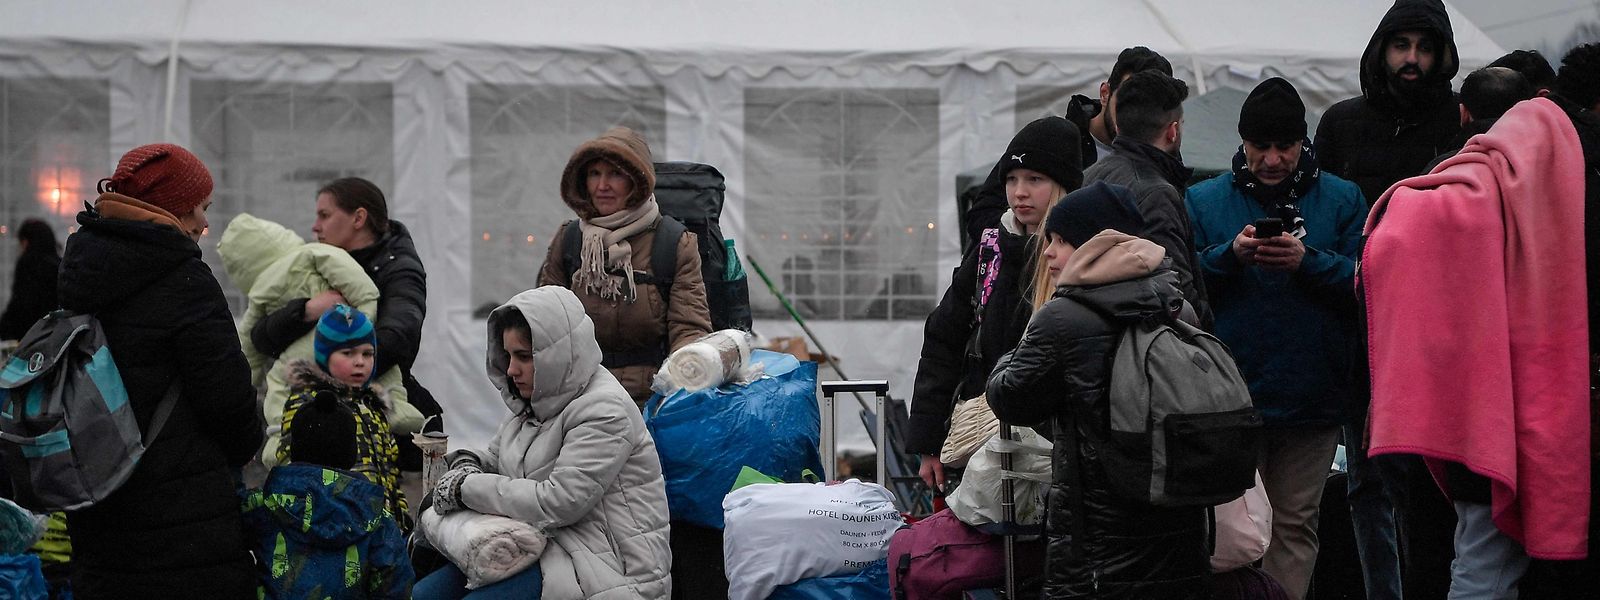 Famílias ucranianas em Medyka, na Polónia depois de terem atravessado a fronteira com a Ucrânia. 